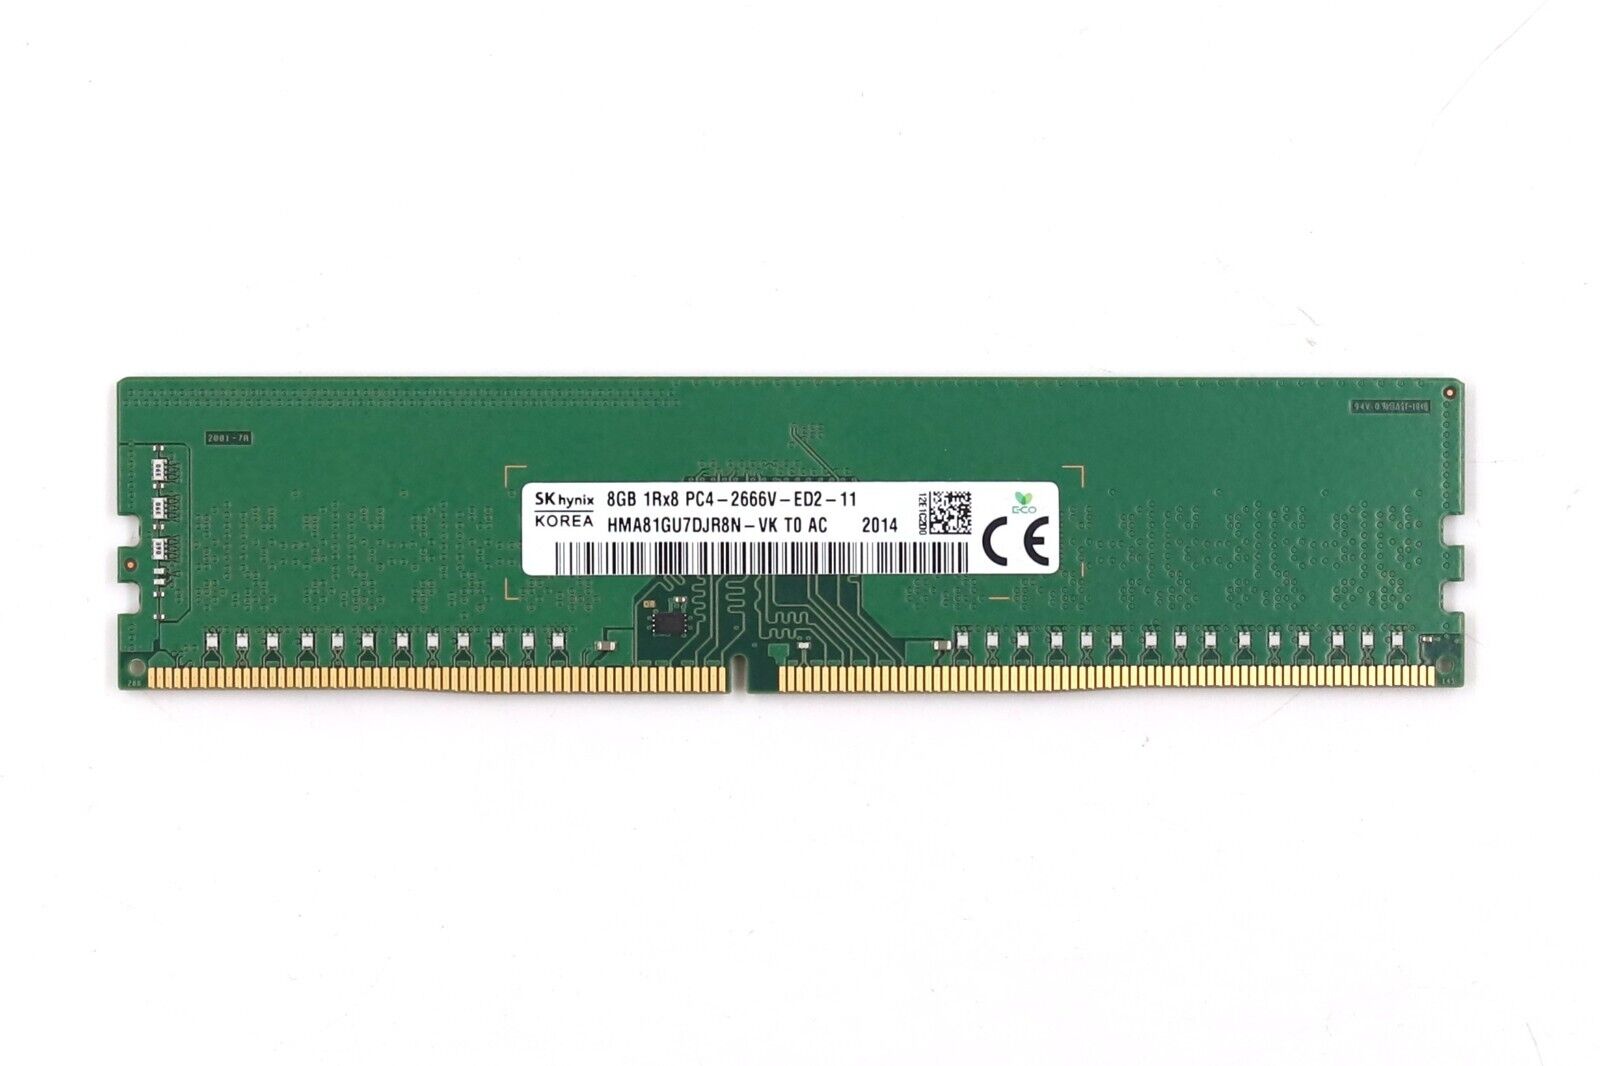 SK hynix 8GB 1Rx8 PC4-2666V-ED2-11 ECC Unbuffered Server Memory HMA81GU7DJR8N-VK